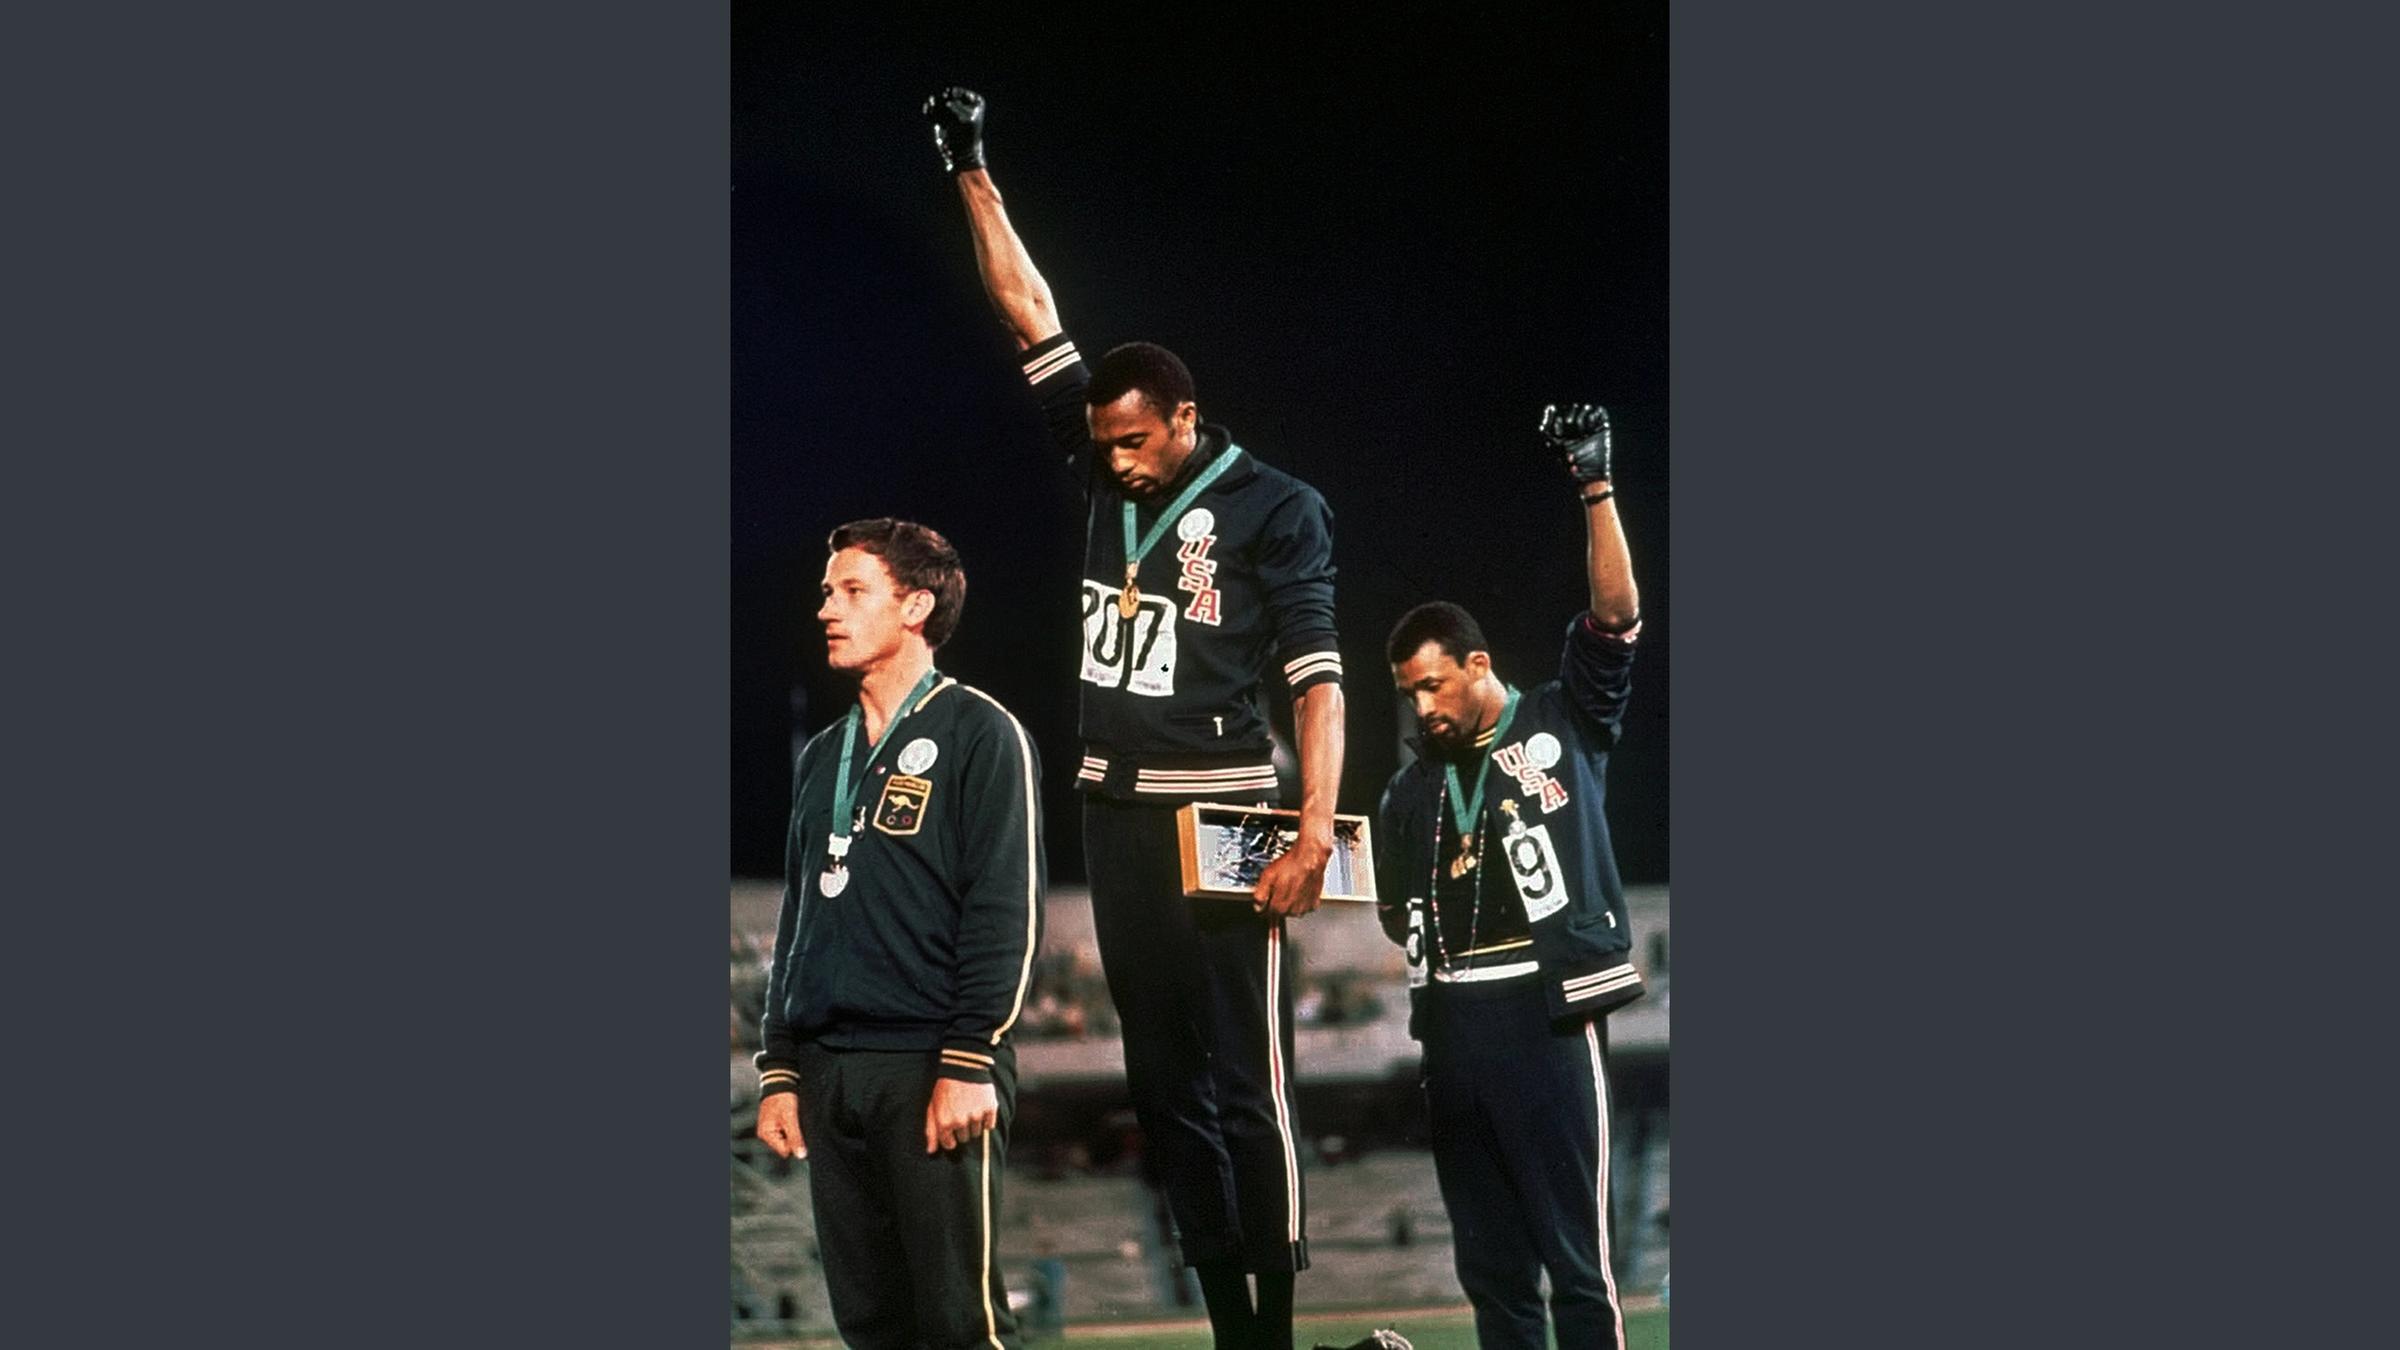 Protest von Tommie Smith während der Medaillenverleihung bei den olympischen Spielen in Mexiko 1968